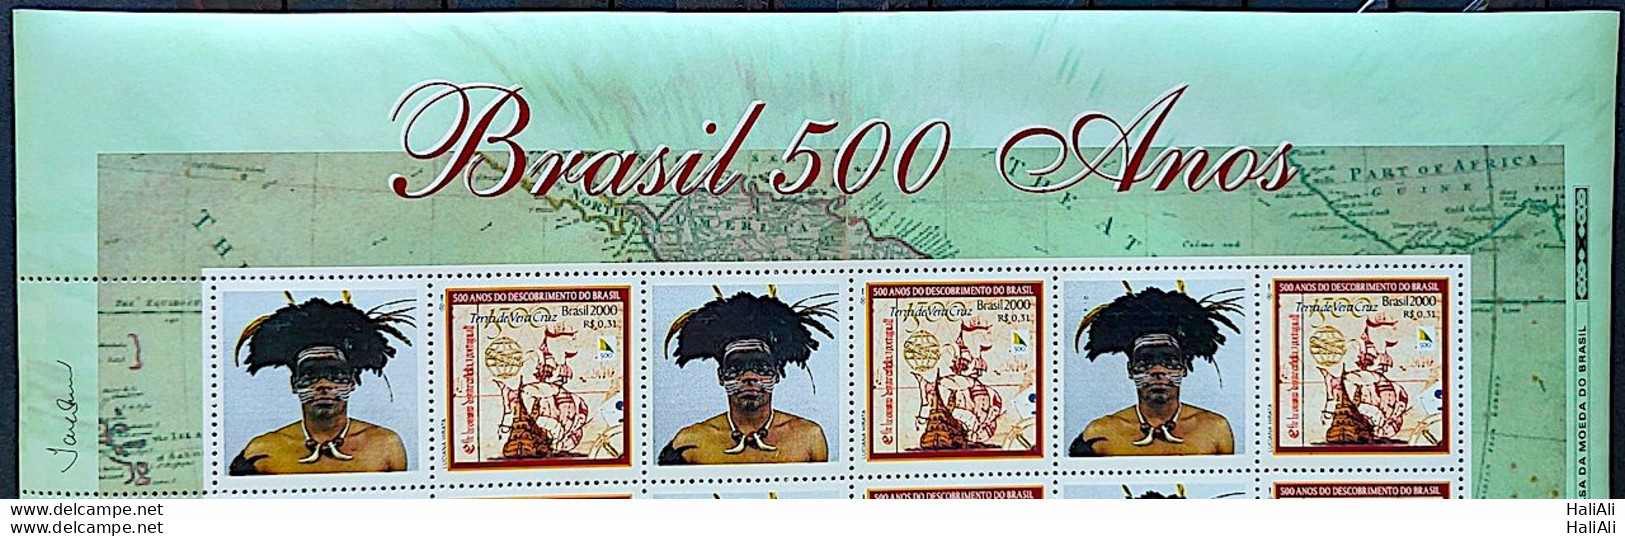 C 2254 Brazil Stamp Custom Discovery Of Brazil Indian Portugal 2000 3 Brazil Stamps Vignette Brasil 500 Years - Nuovi